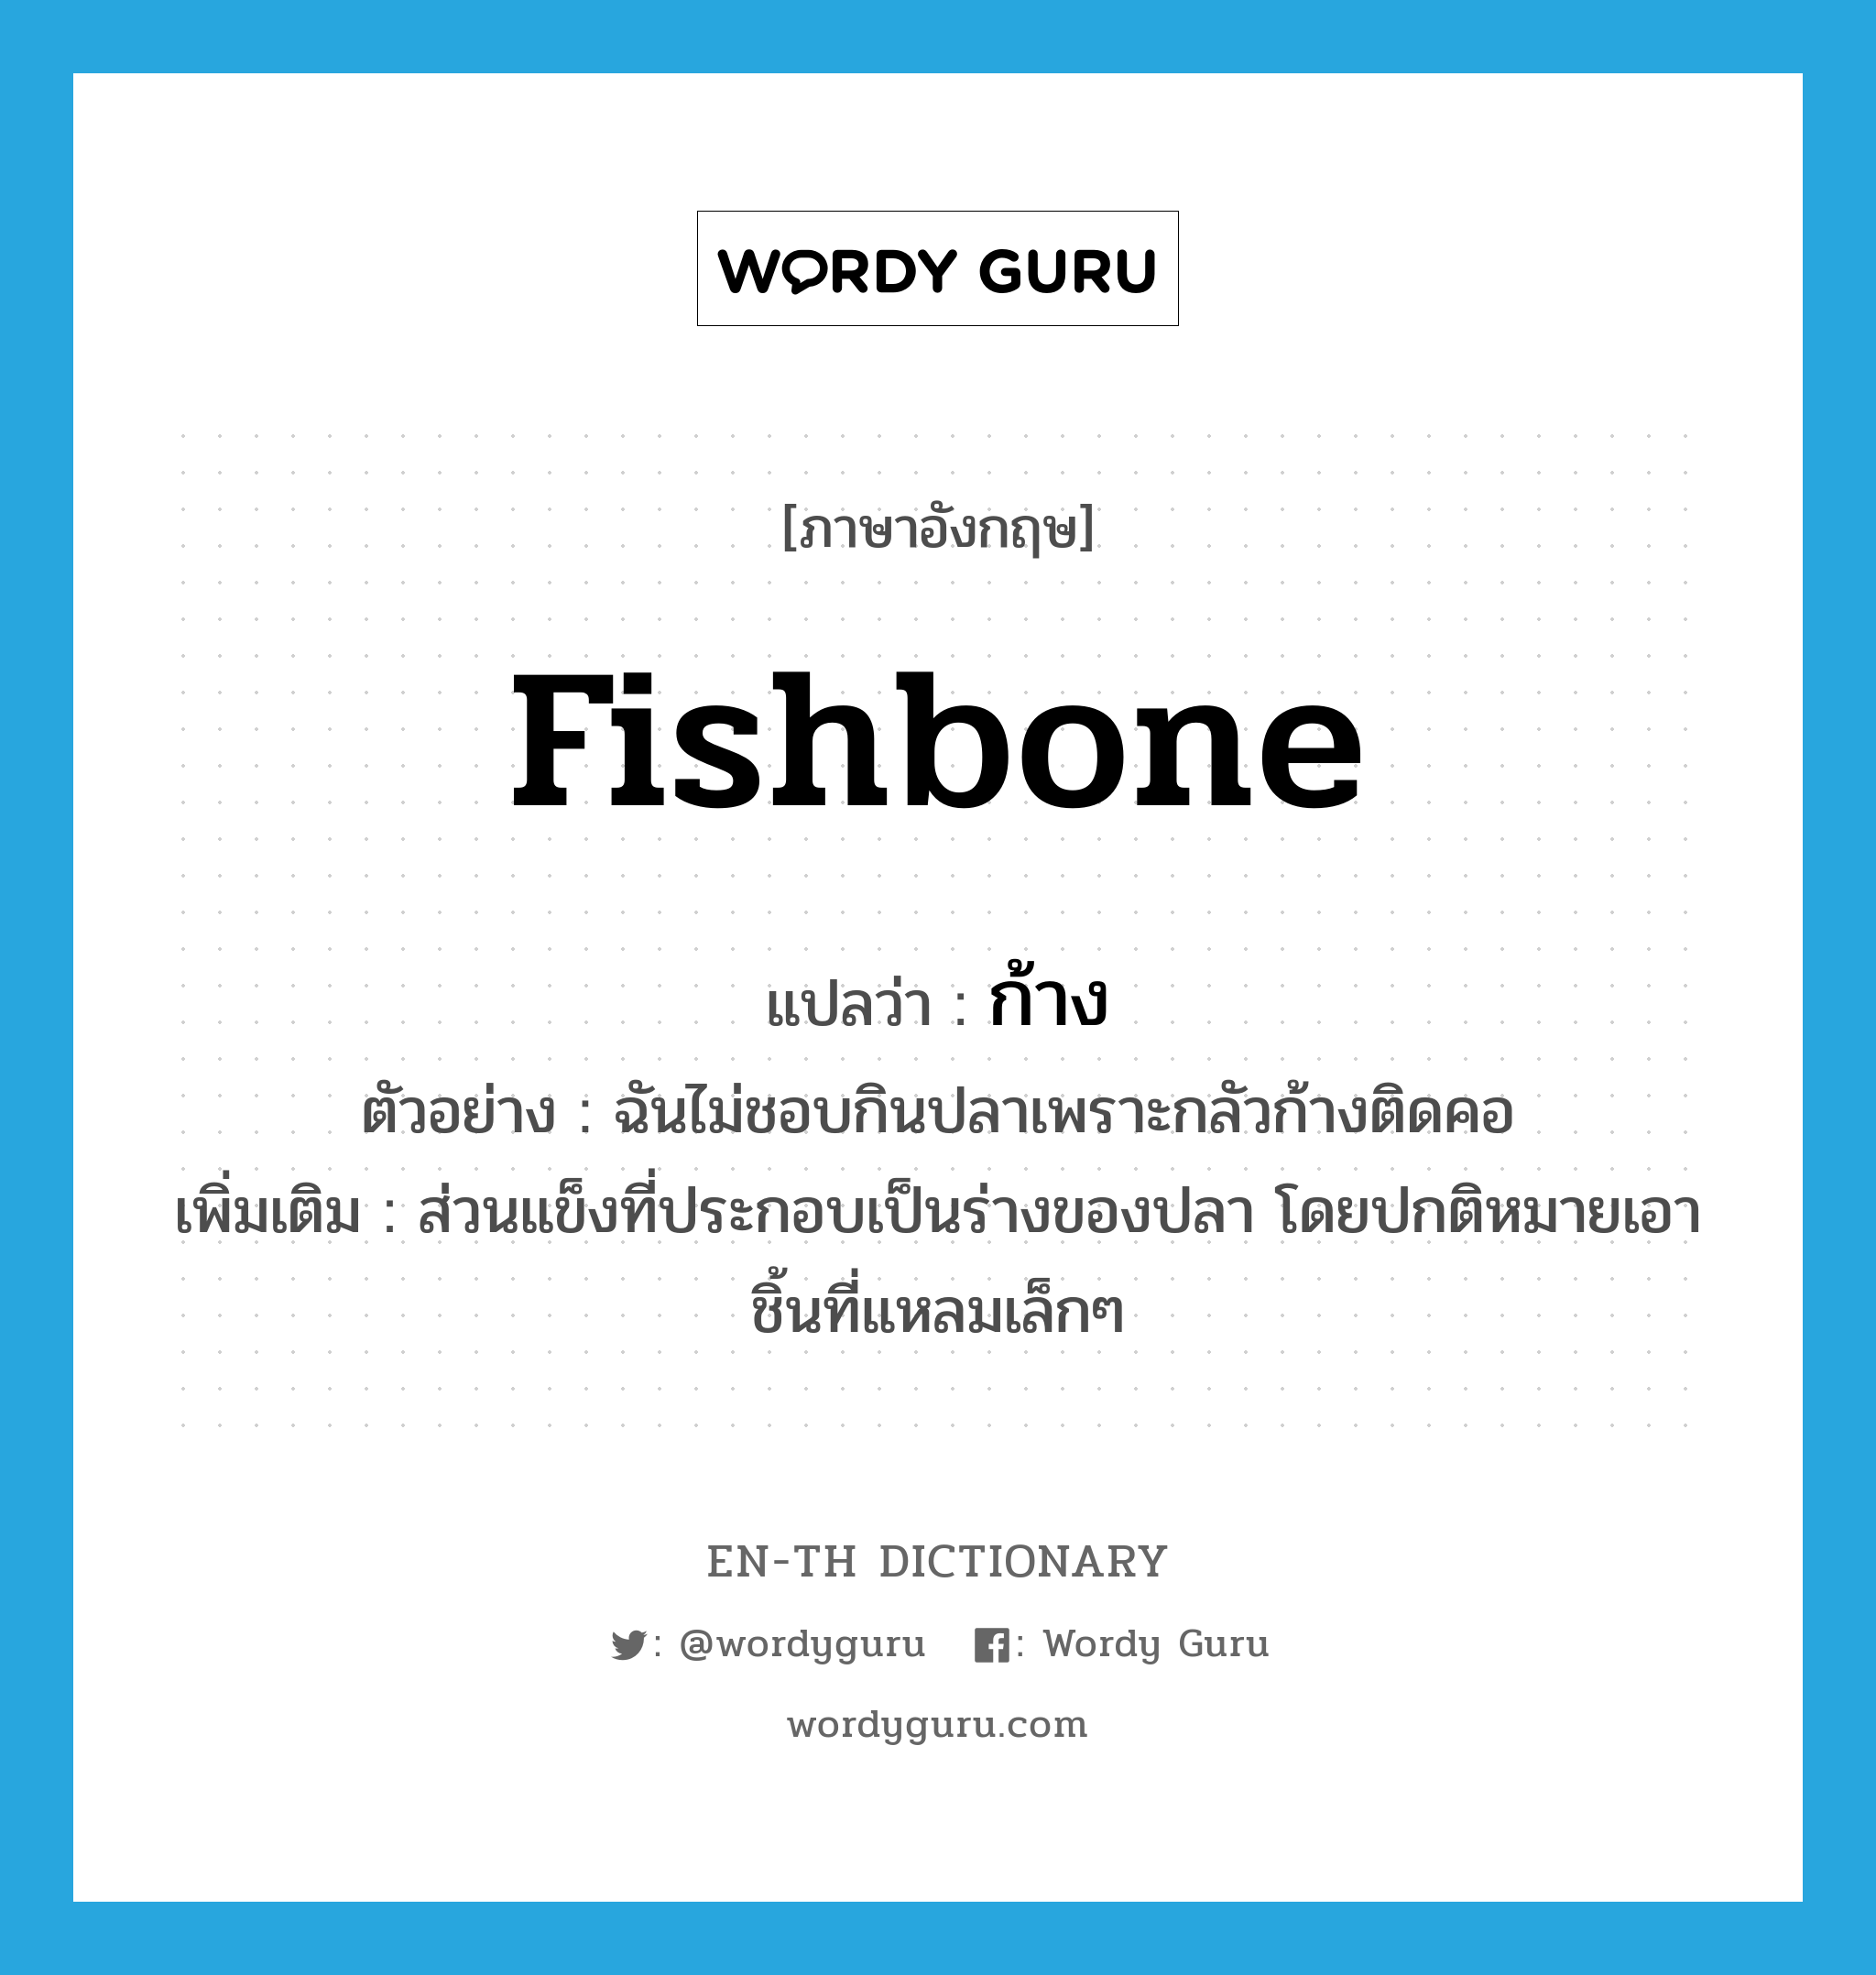 fishbone แปลว่า?, คำศัพท์ภาษาอังกฤษ fishbone แปลว่า ก้าง ประเภท N ตัวอย่าง ฉันไม่ชอบกินปลาเพราะกลัวก้างติดคอ เพิ่มเติม ส่วนแข็งที่ประกอบเป็นร่างของปลา โดยปกติหมายเอาชิ้นที่แหลมเล็กๆ หมวด N